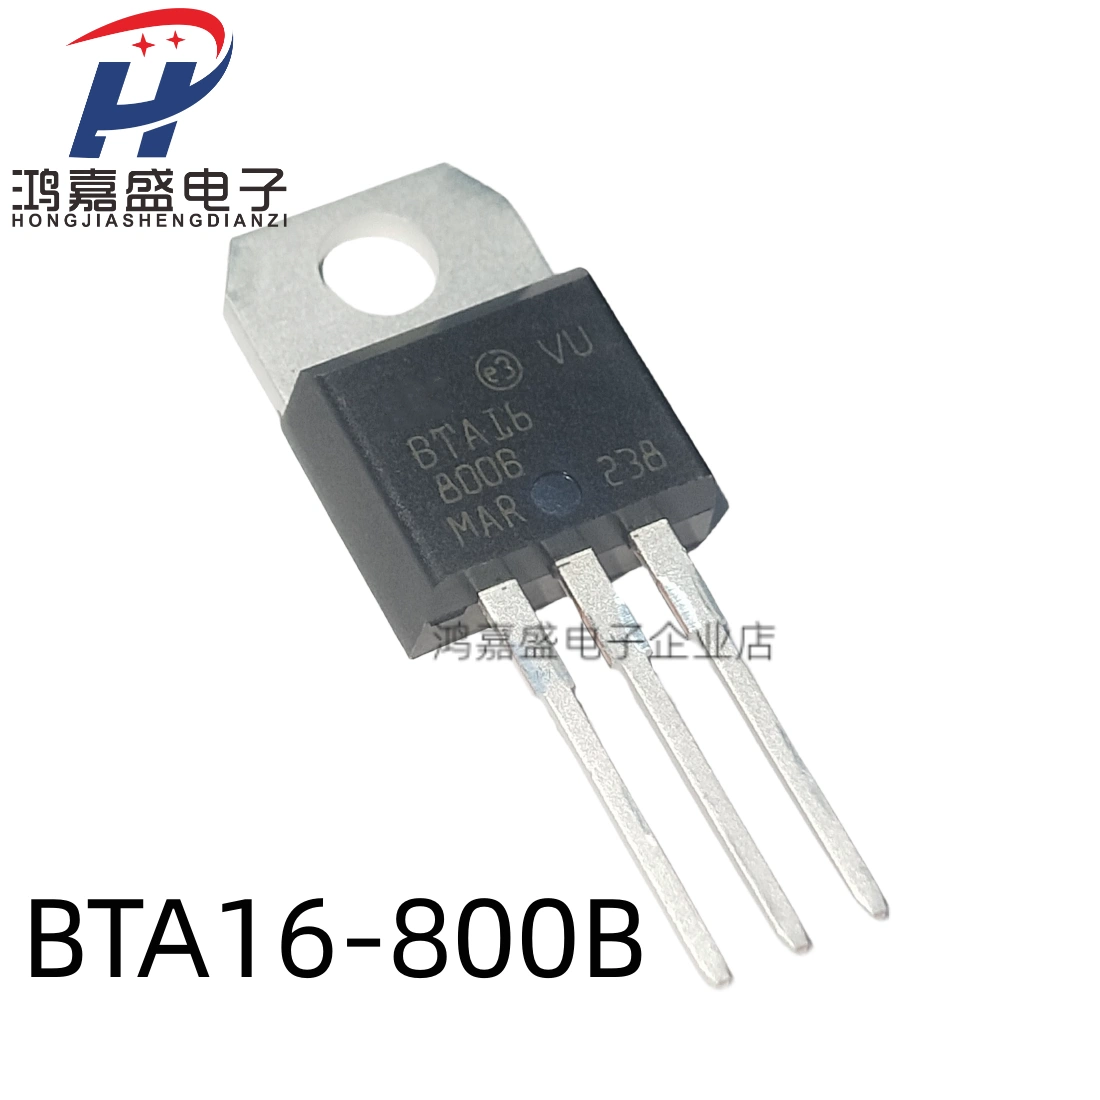 BTA16-800B 16-800B cắm trực tiếp TO-22016A/800V thyristor truyền động hai chiều hoàn toàn mới